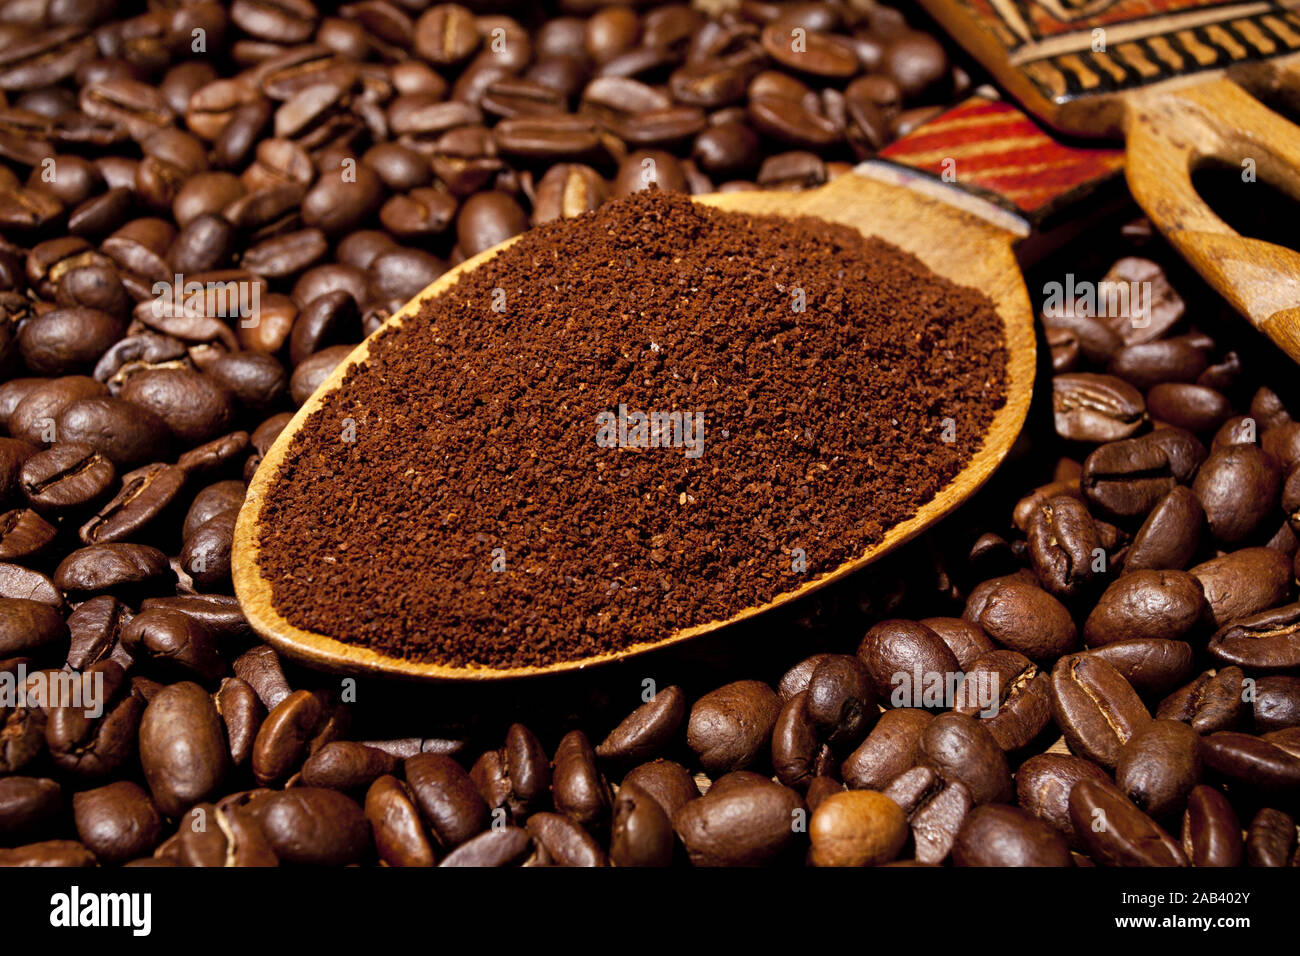 Frisch gemahlener Kaffee auf einem Holzloeffel |appena il caffè torrefatto in grani su un cucchiaio di legno| Foto Stock